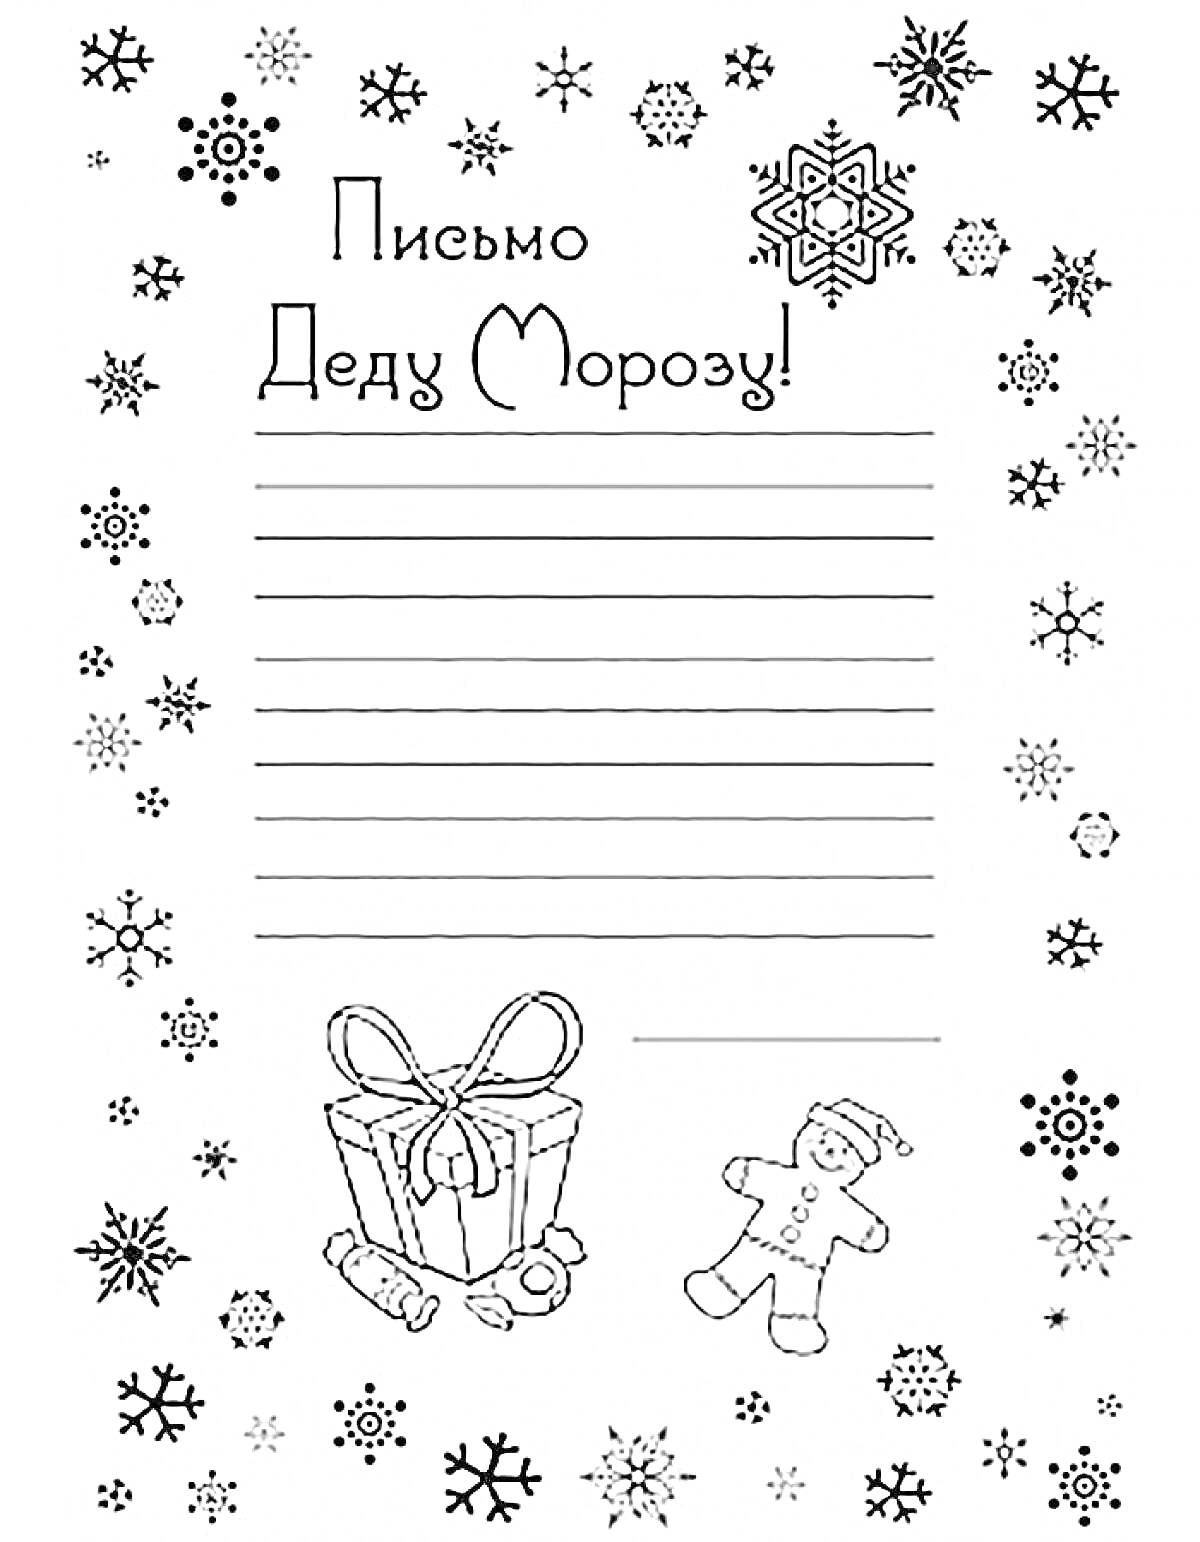 Письмо Деду Морозу с подарком, пряничным человечком и снежинками